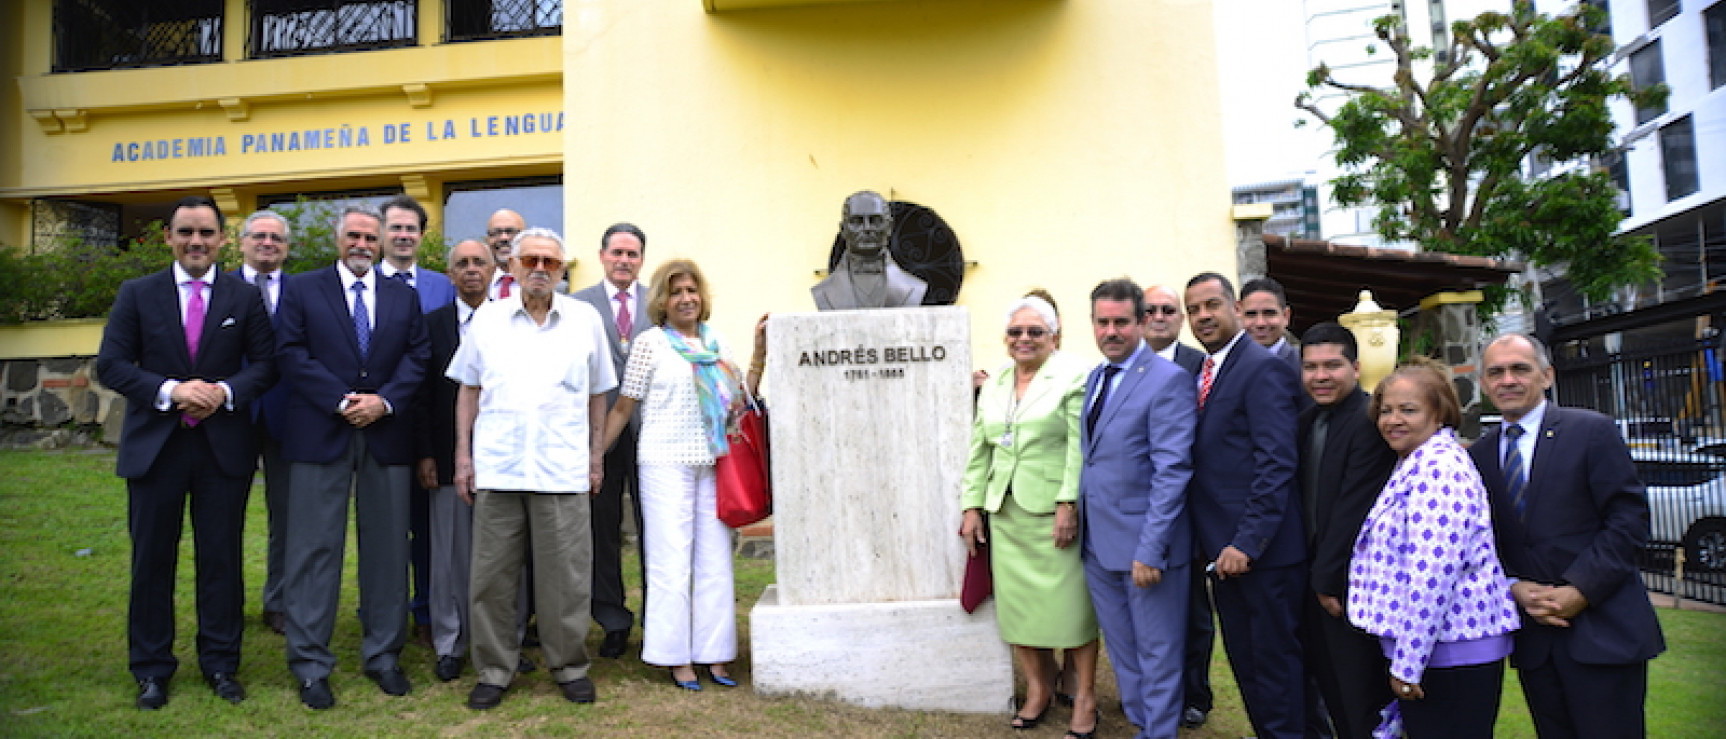 Inauguración del monumento dedicado a Andrés Bello.